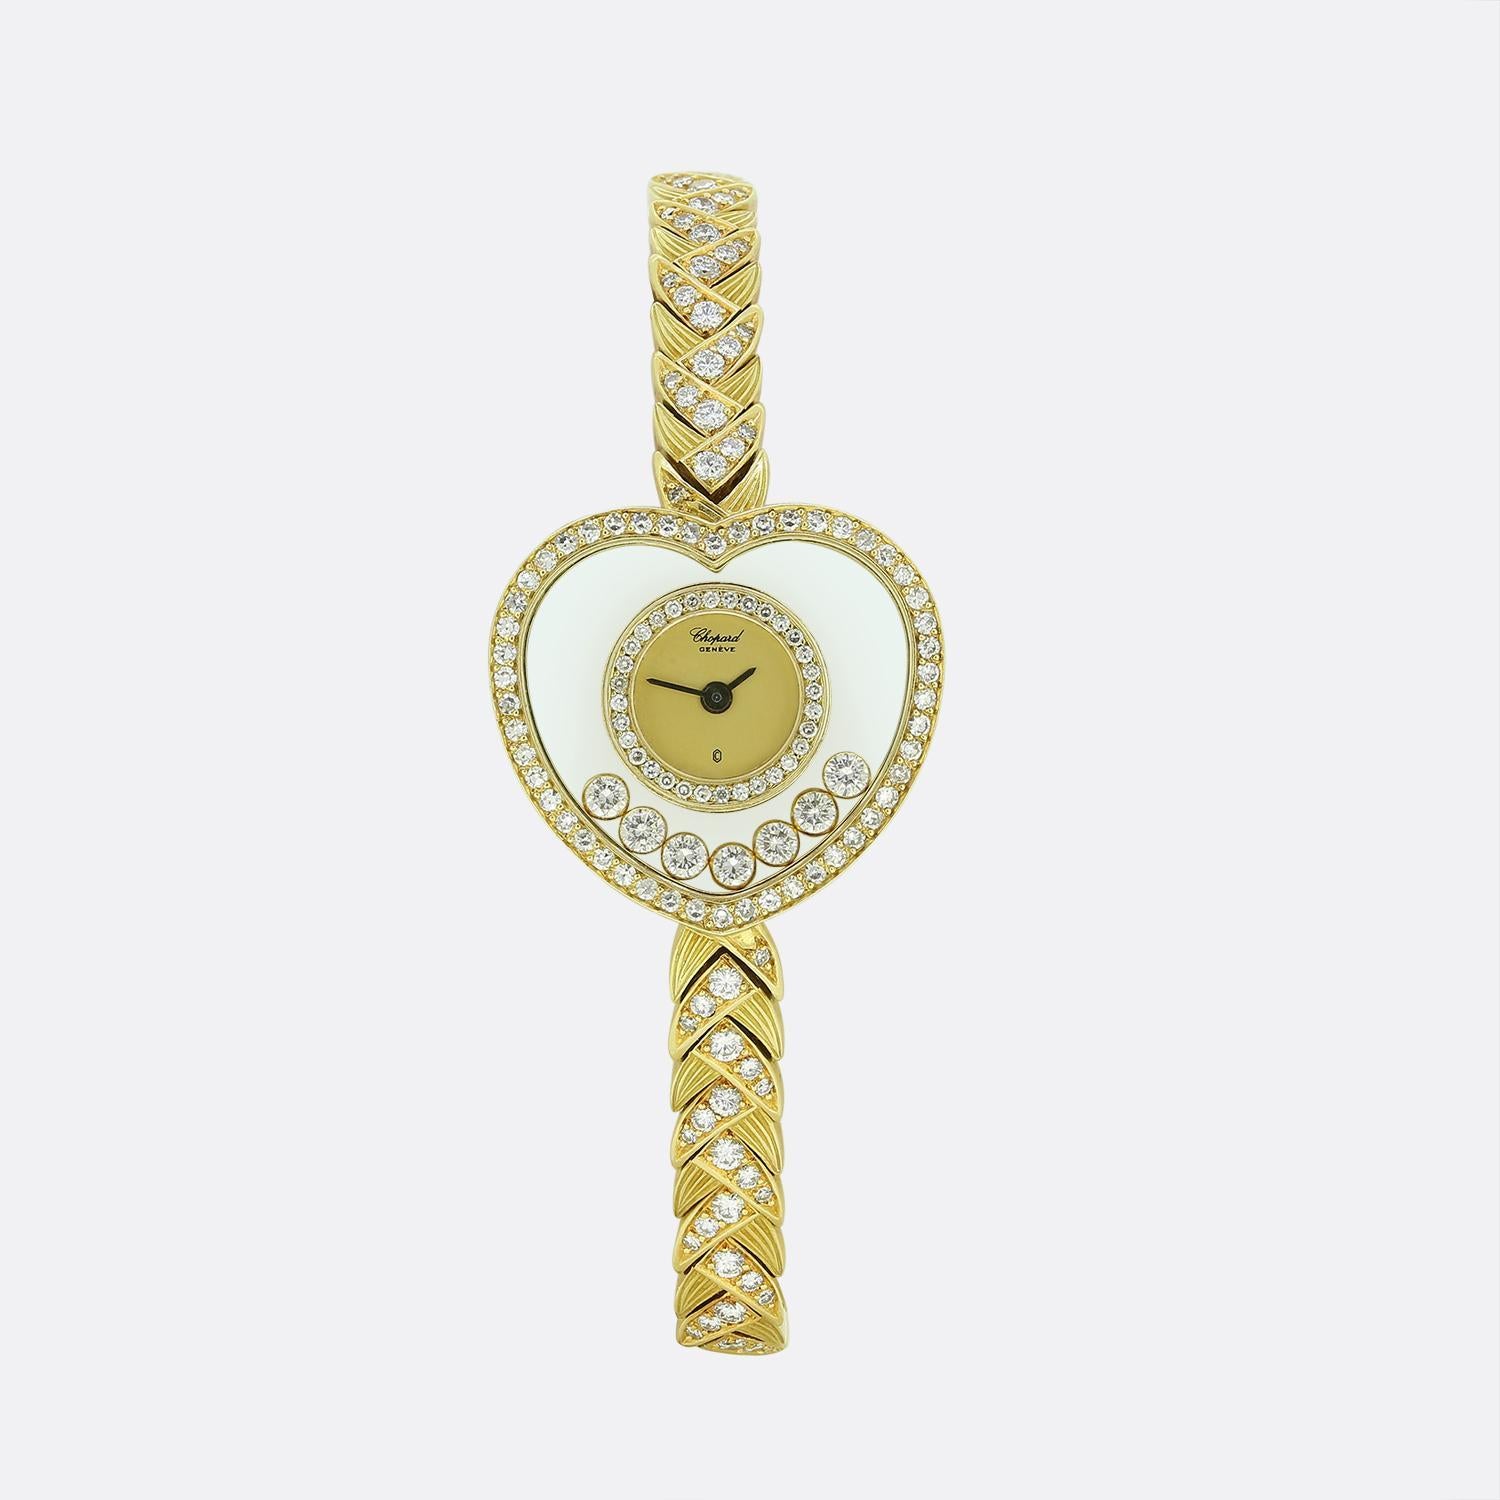 Voici une fabuleuse montre cocktail en diamants du célèbre joaillier français Chopard. Cette pièce 